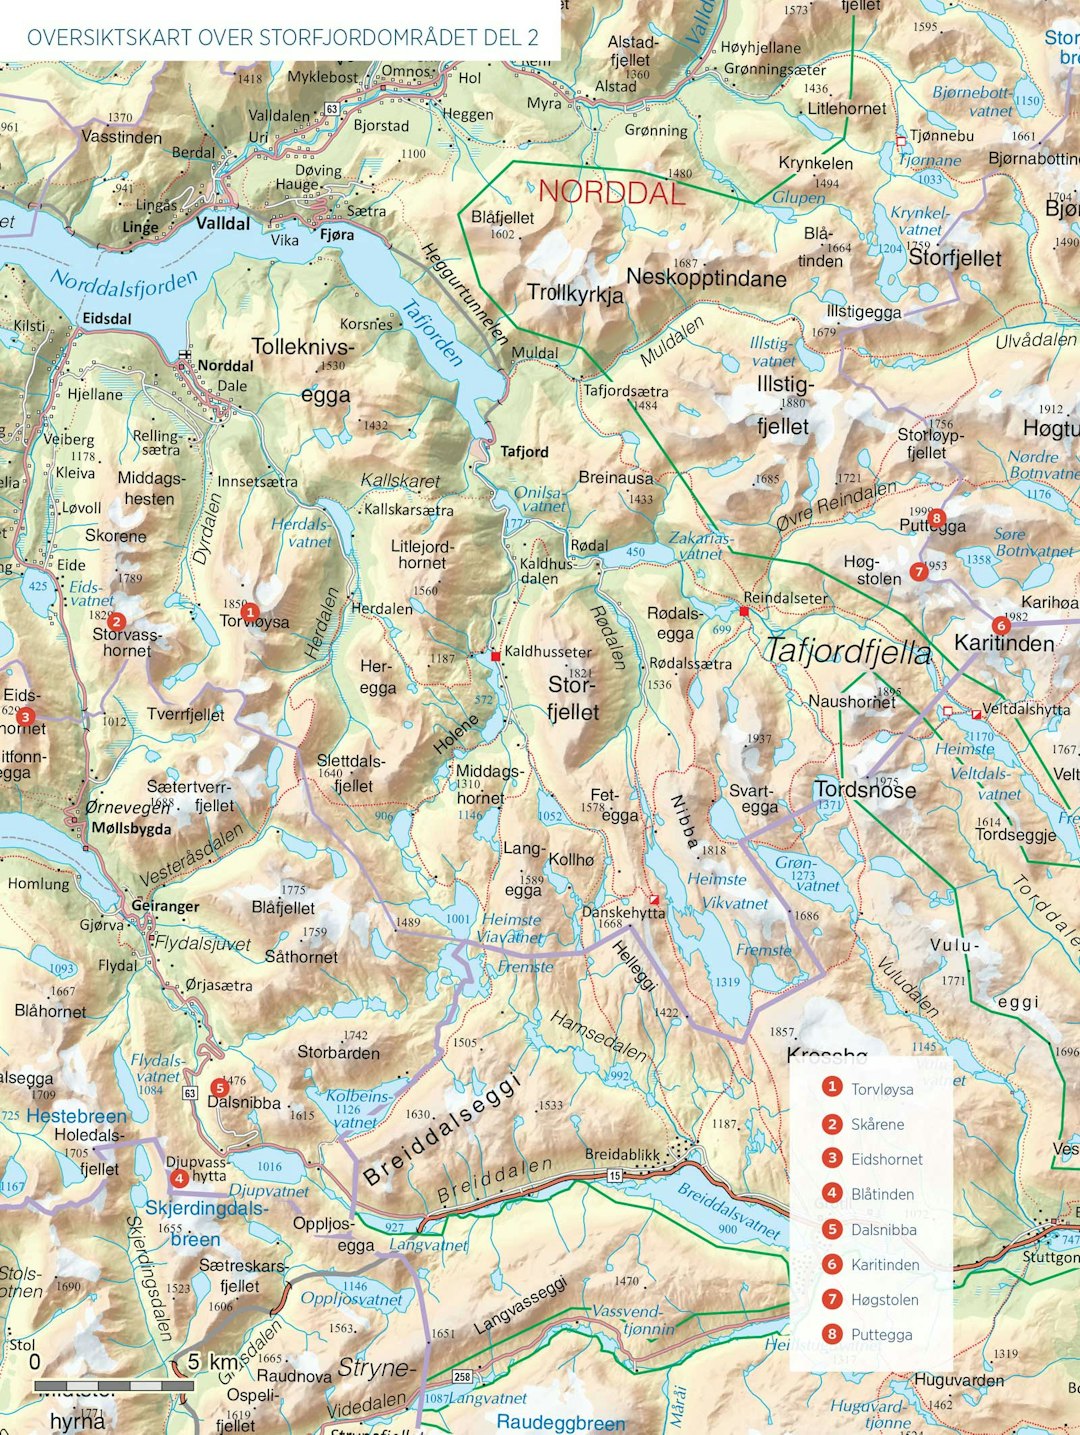 Oversiktskart over Storfjordområdet del 2.